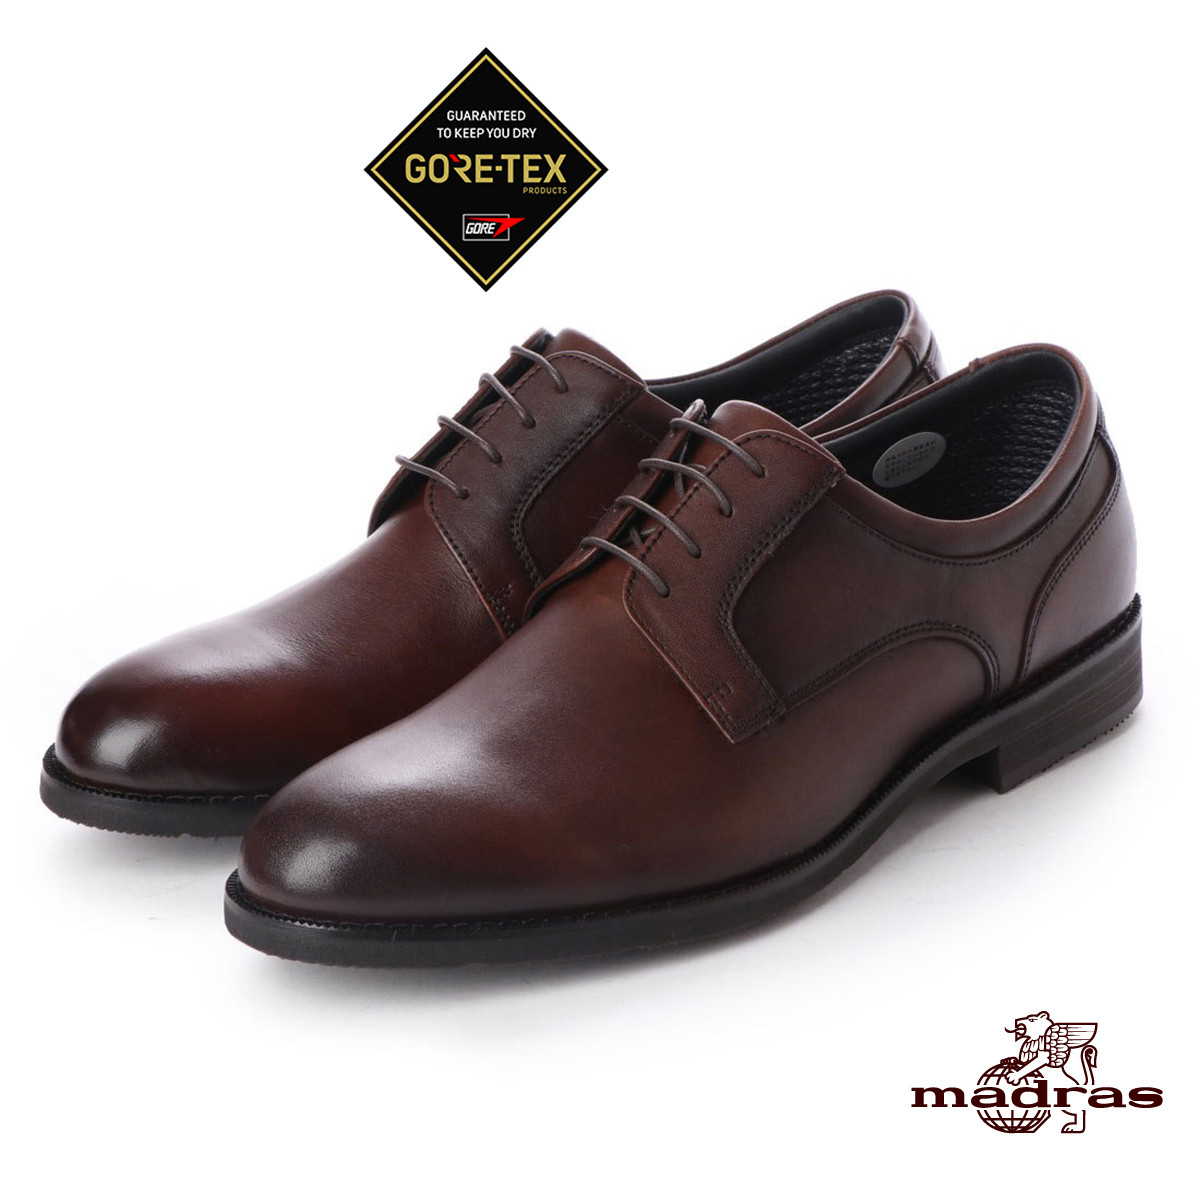 
madras Walk(マドラスウォーク)の紳士靴 MW5906 ダークブラウン 27.0cm【1343244】
